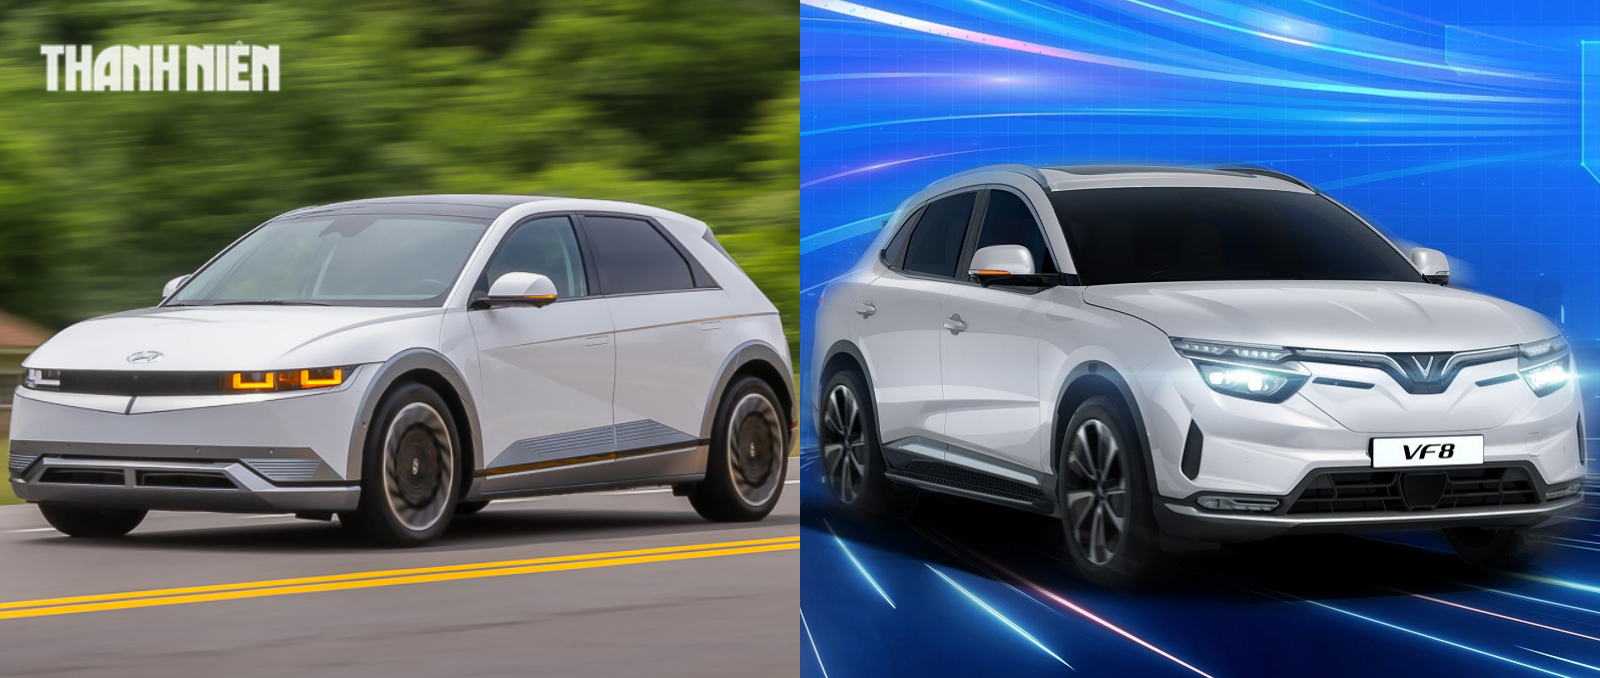 Ô tô điện tầm 1,5 tỉ đồng: Chọn Hyundai Ioniq 5 hay VinFast VF 8 - Ảnh 1.